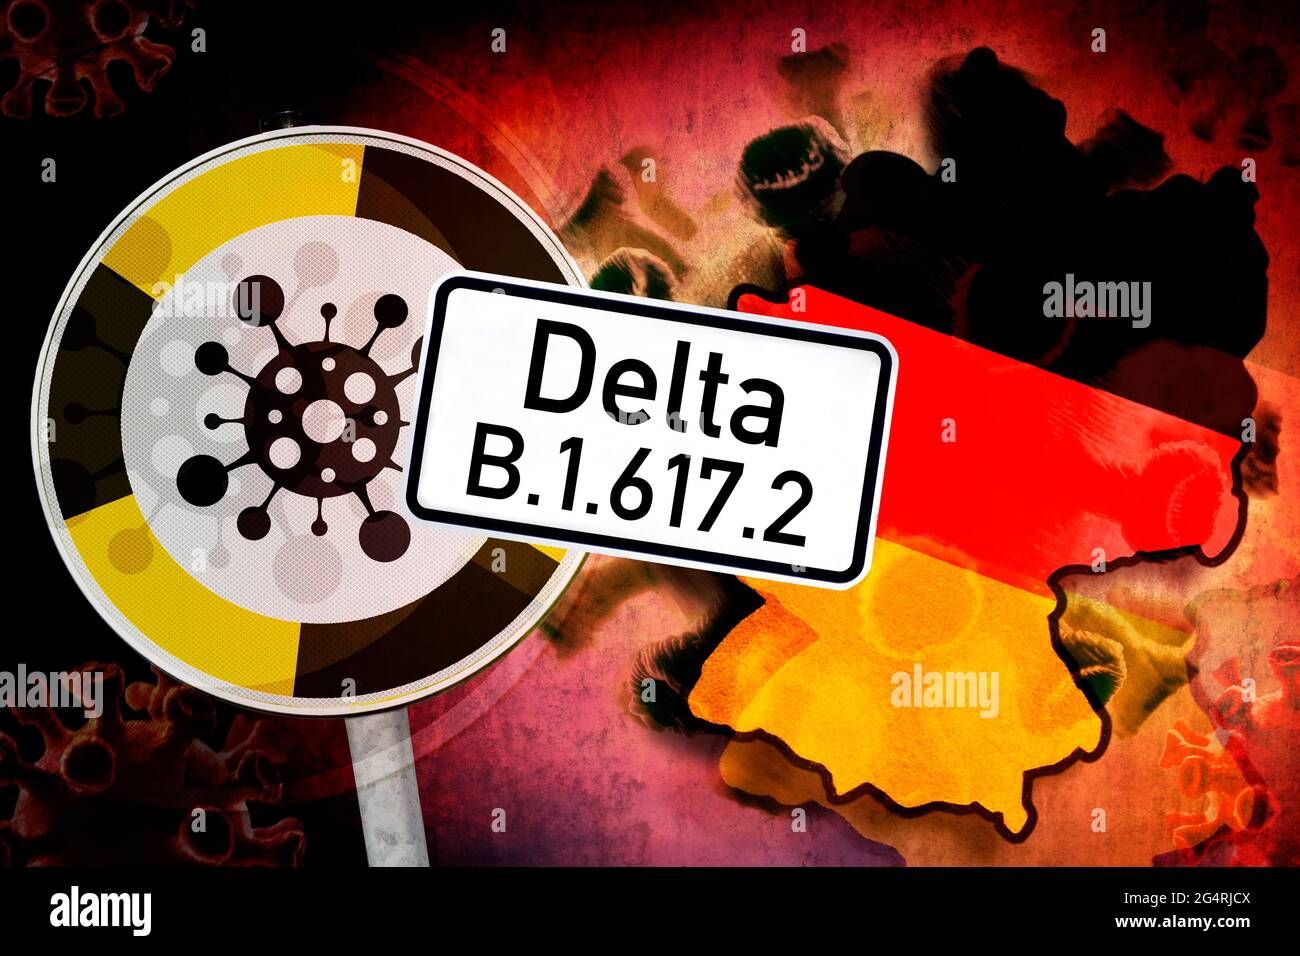 Virus Corona, signe d'avertissement et frontières allemandes, variante delta B.1.617.2 Banque D'Images